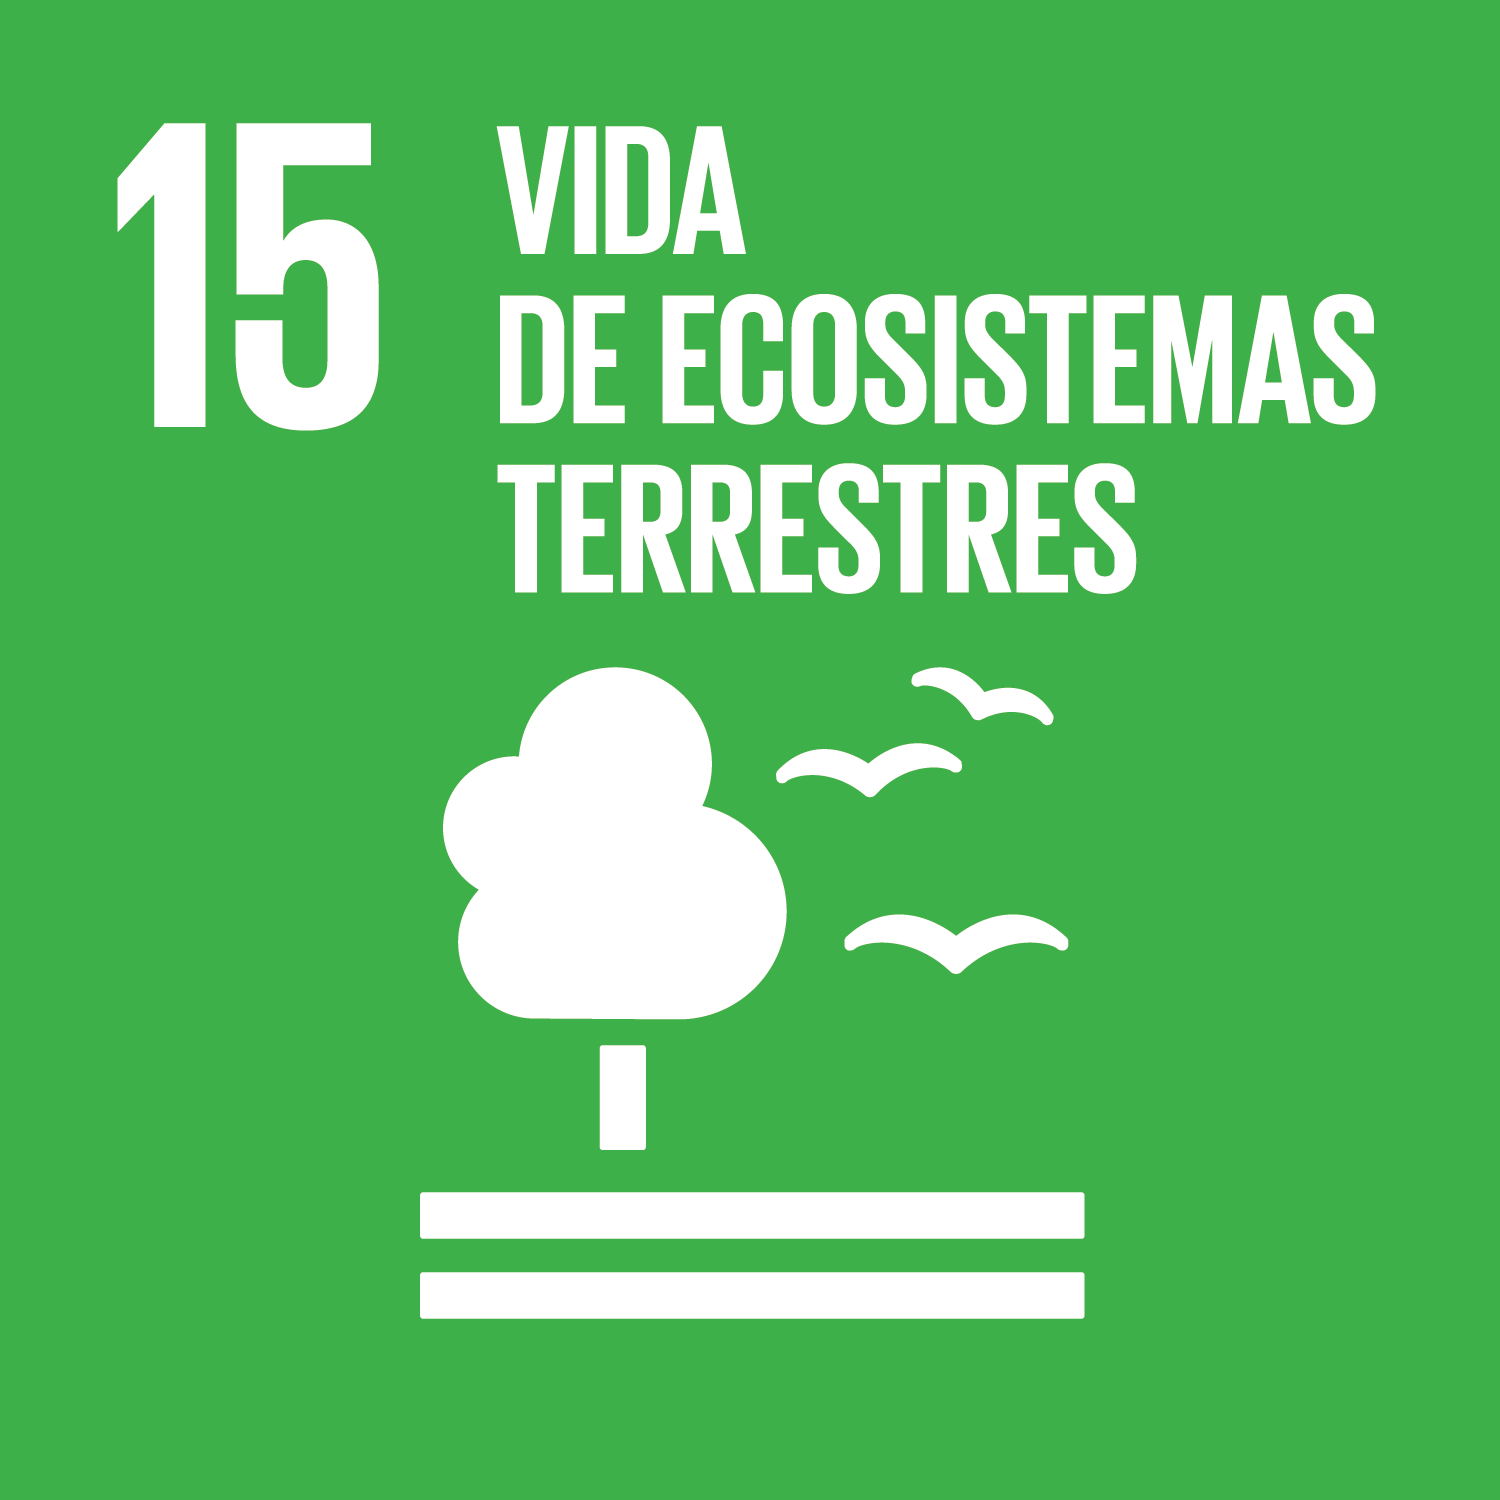 Los Objetivos de Desarrollo Sostenible - Vida de ecosistemas terrestres